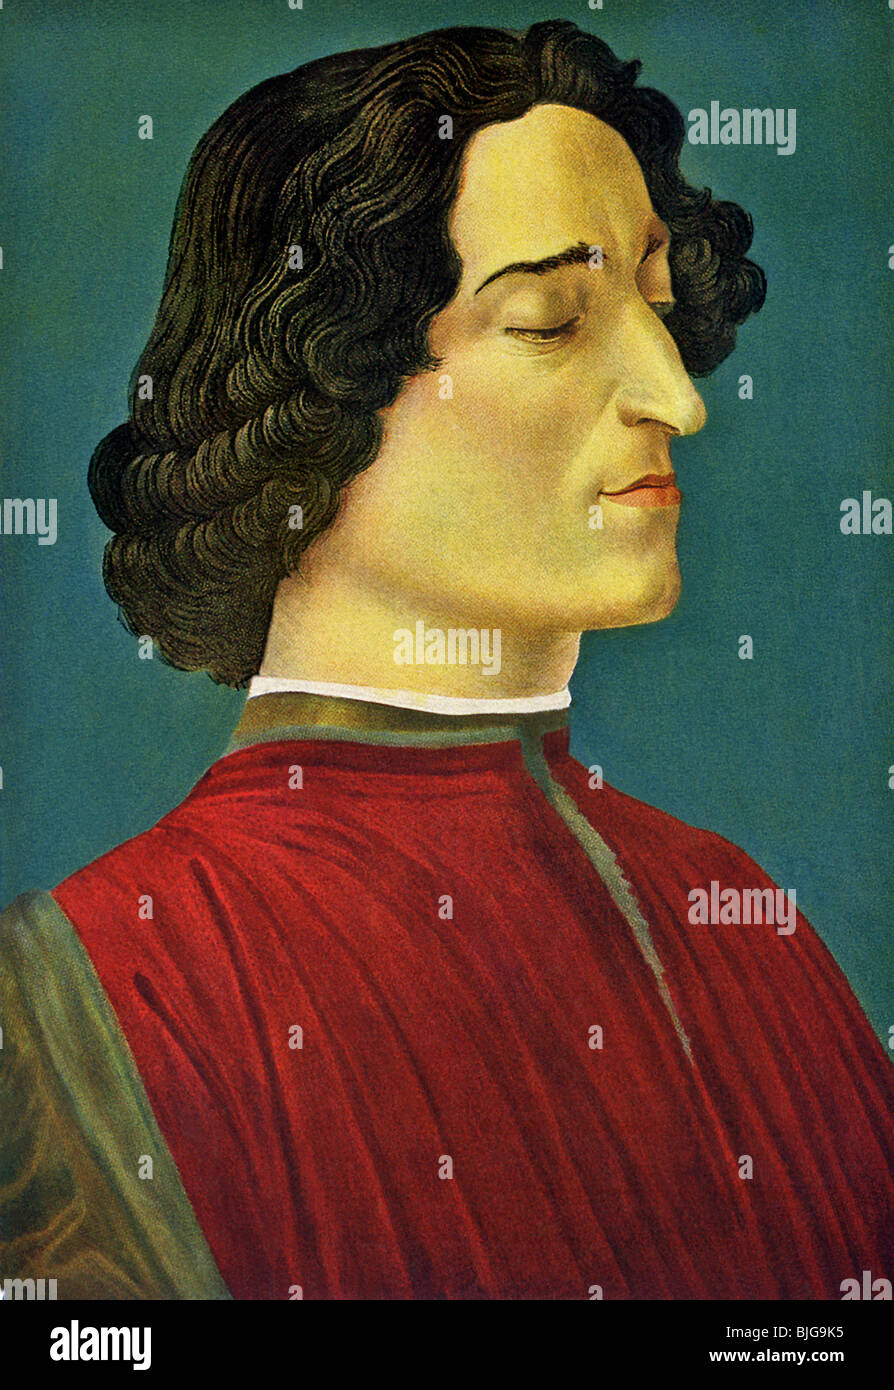 Este retrato de Giuliano de Medici fue realizada por Sandro Botticelli (c. 1444-1510), artista florentino del Renacimiento. Foto de stock